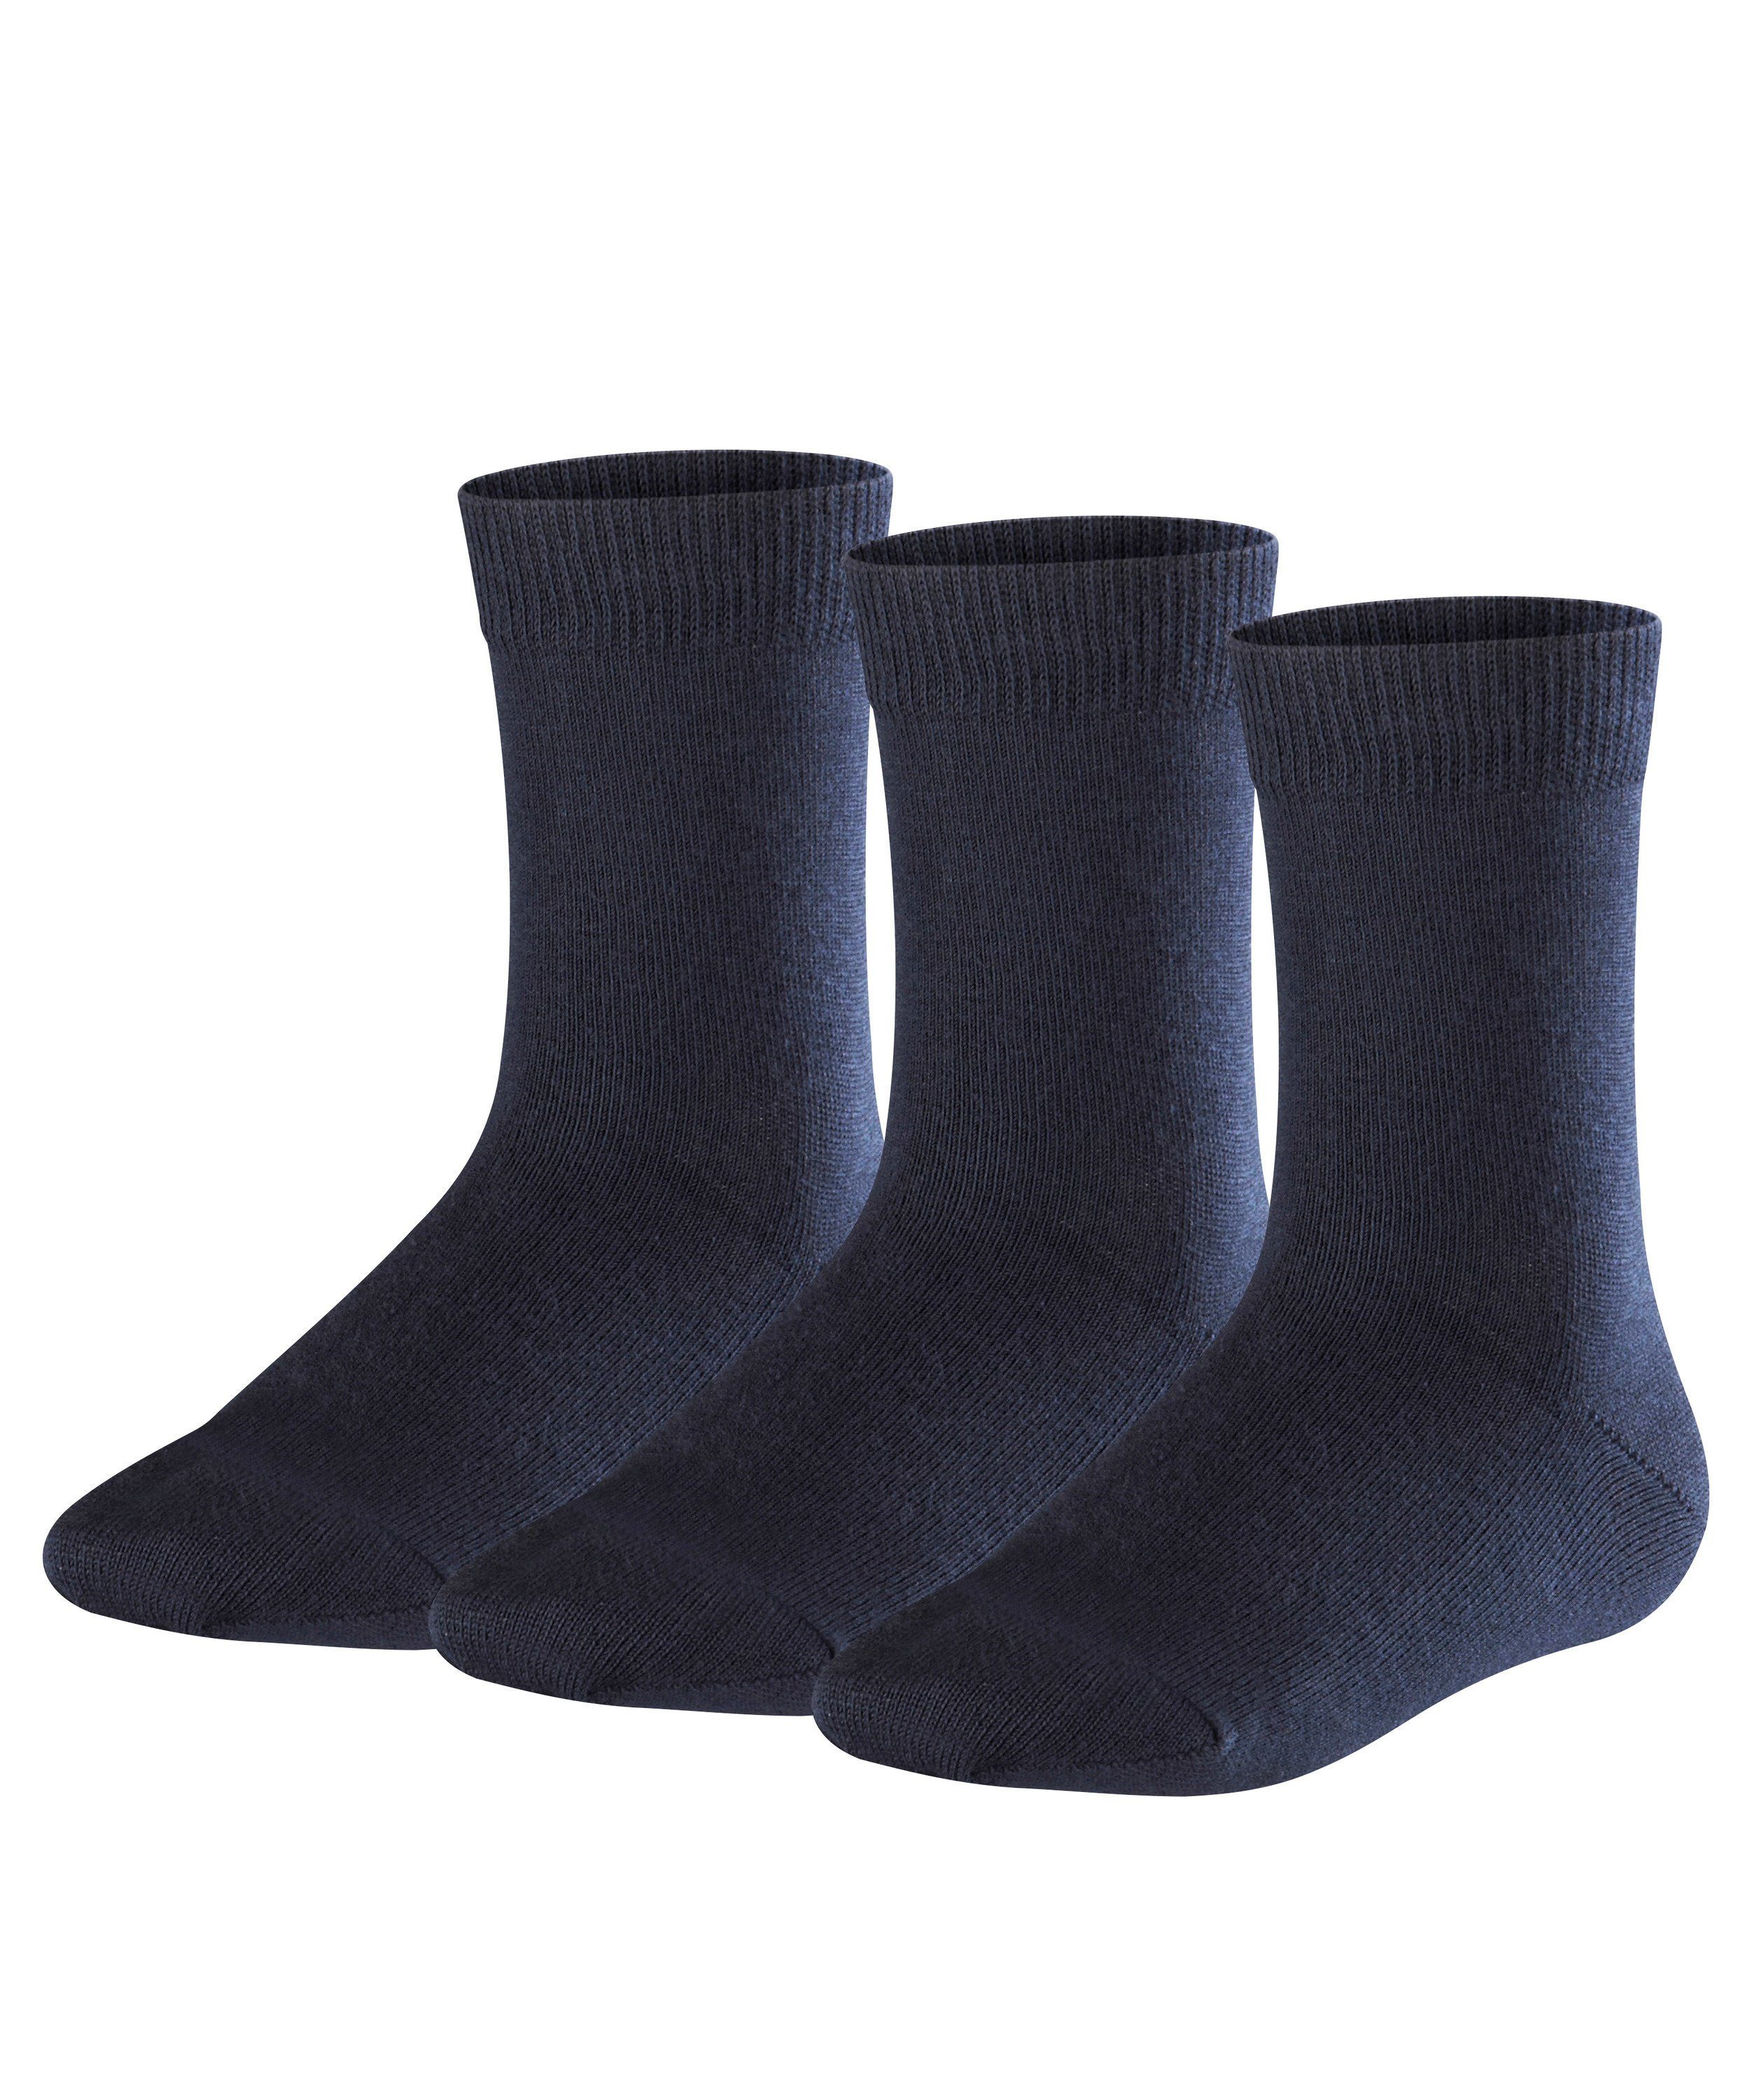 darkmarine Socken (3-Paar) Family 3-Pack FALKE (6170)